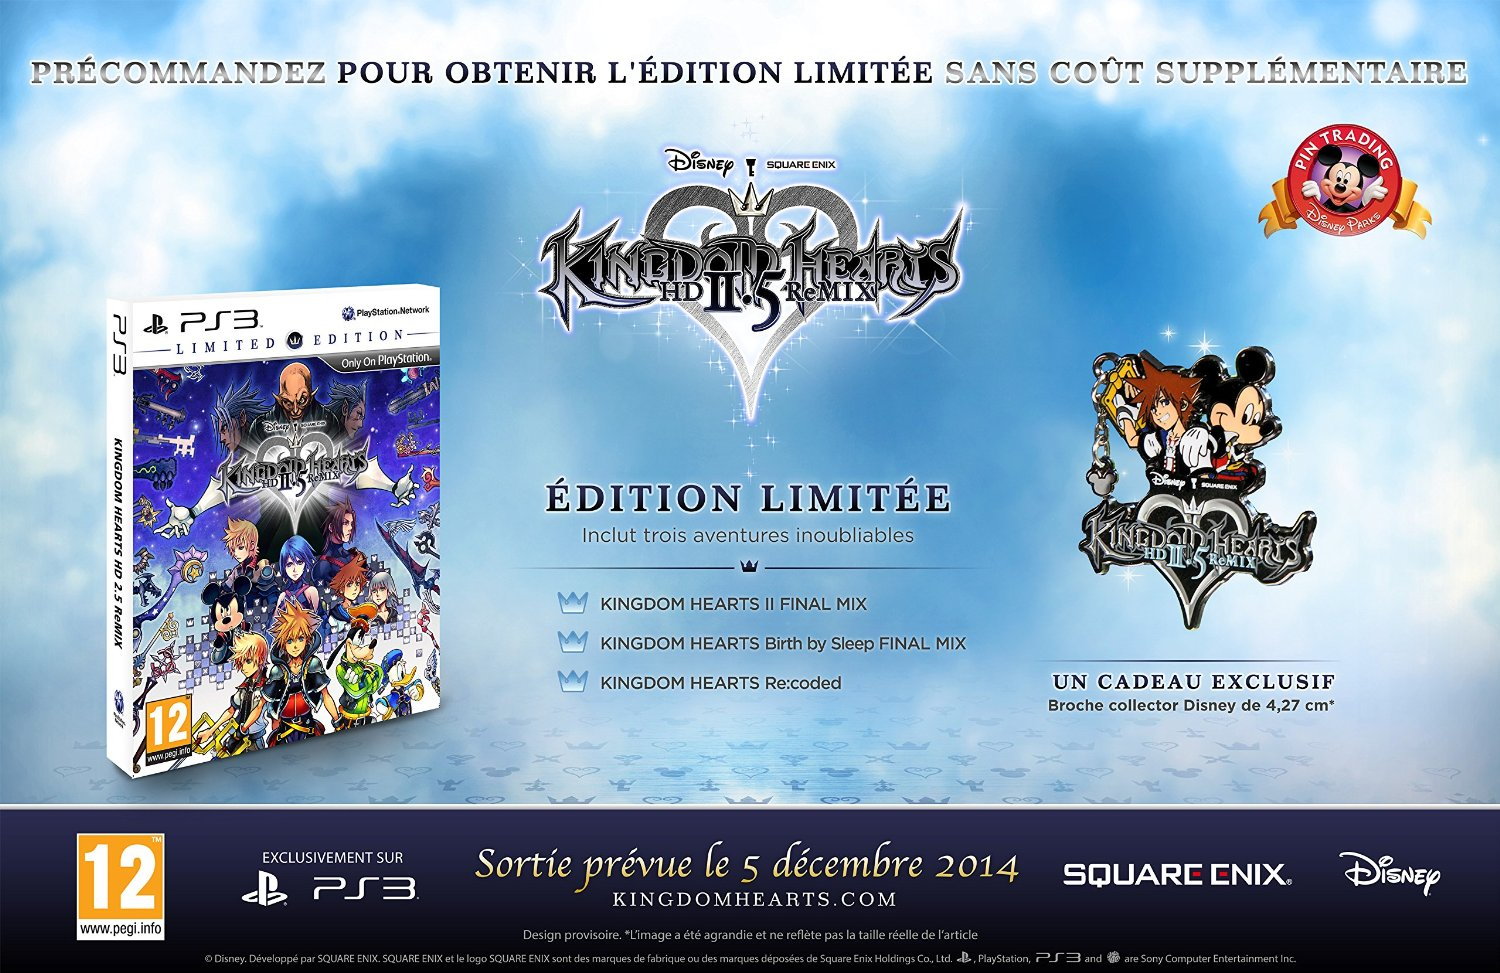  Kingdom Hearts HD 1.5 Remix : Square Enix LLC